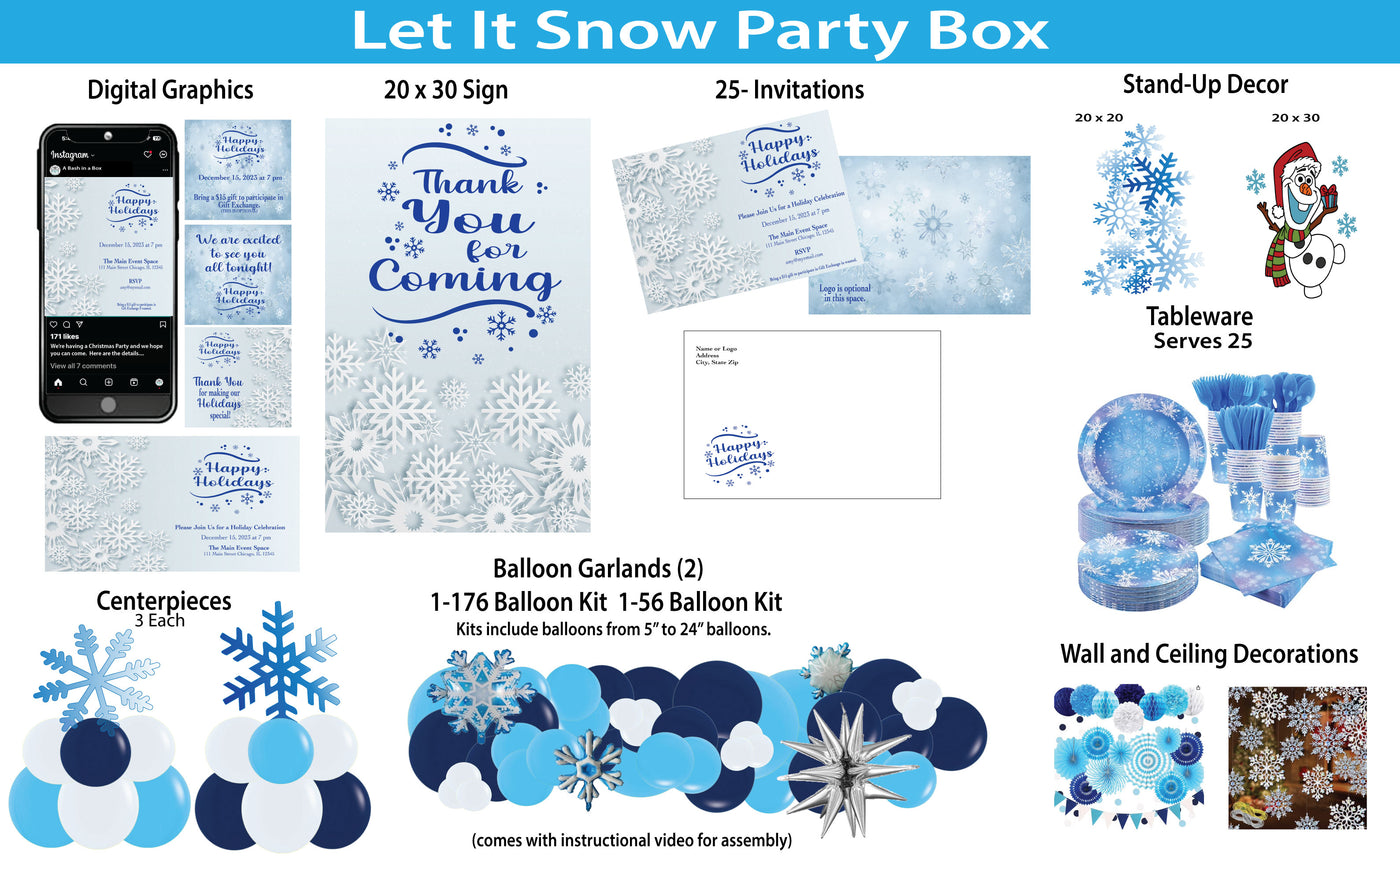 Let it Snow Party Box